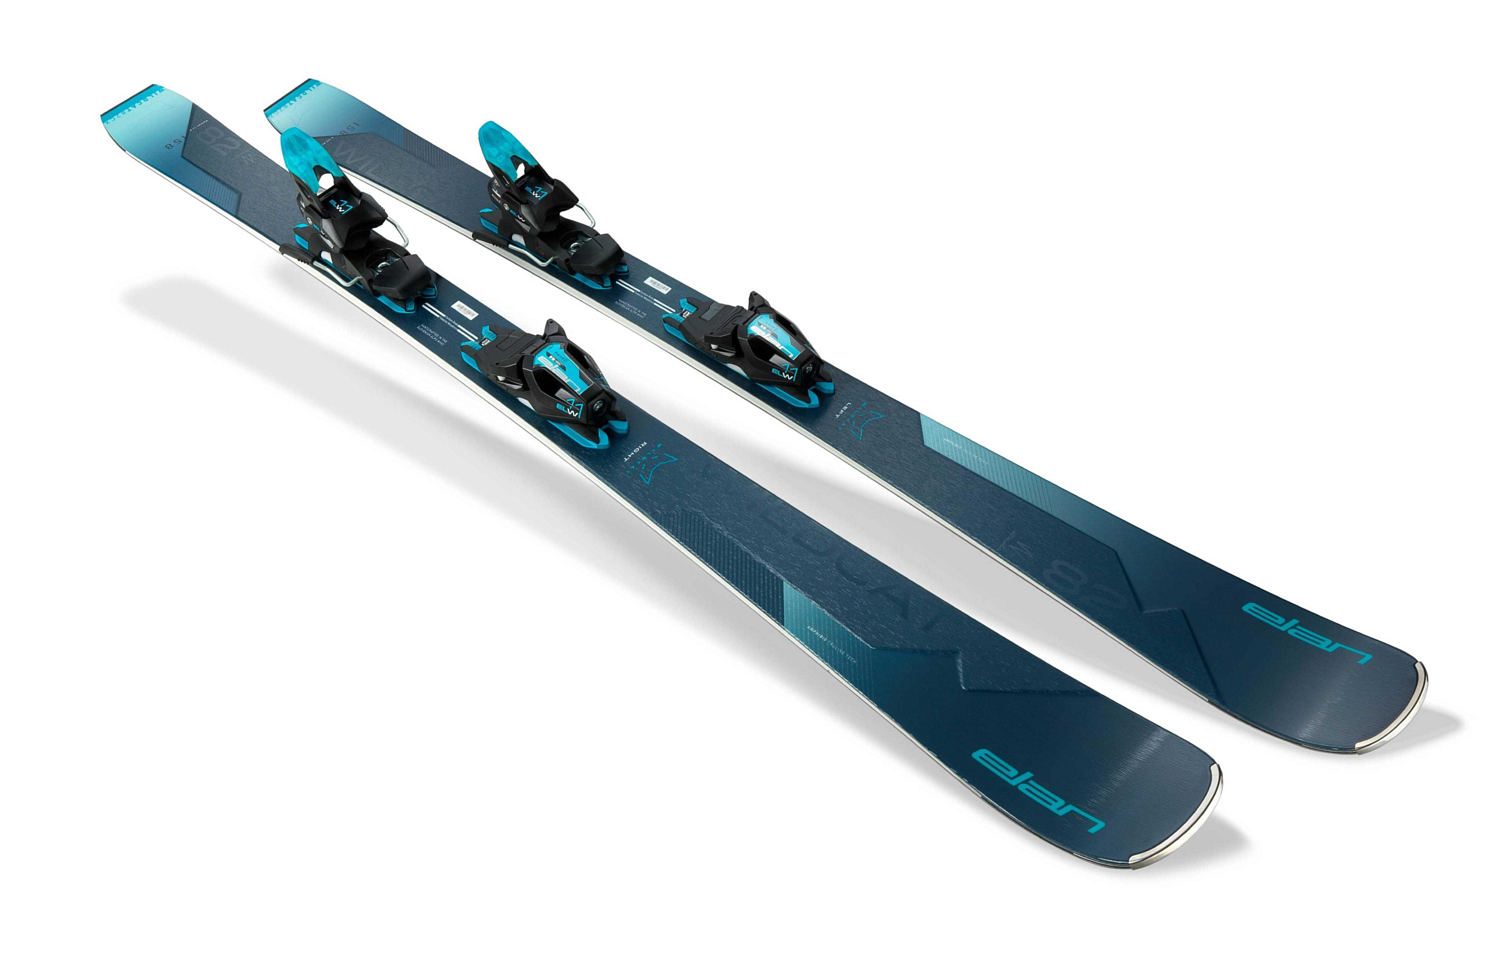 Горные лыжи с креплениями ELAN Wildcat 82 Cx Ps + Elw 11.0 Gw